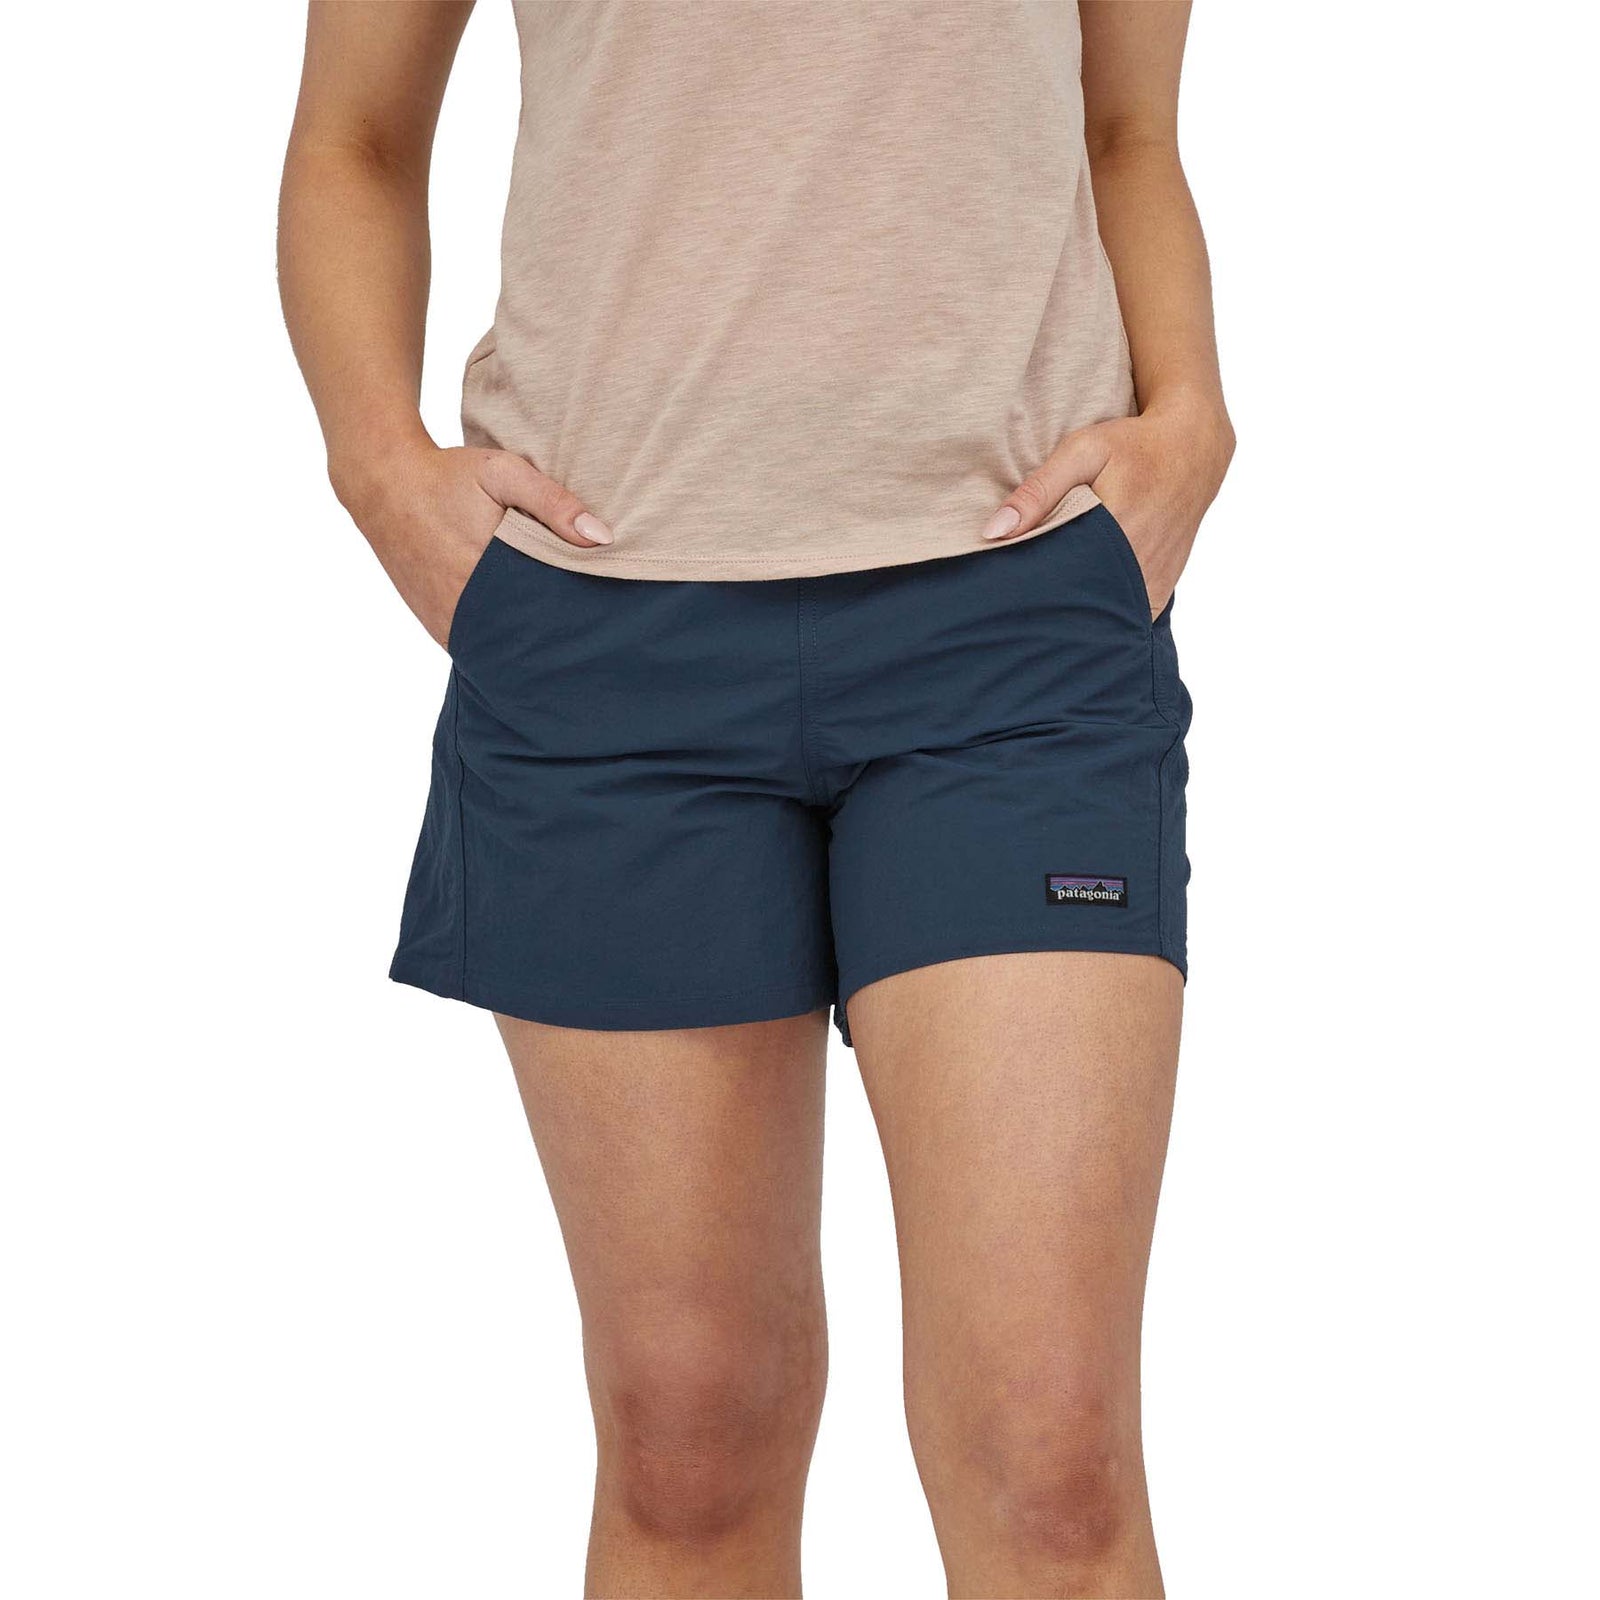 Patagonia Men's Baggies Shorts - 5 in. Joy: Pitch Blue / XL